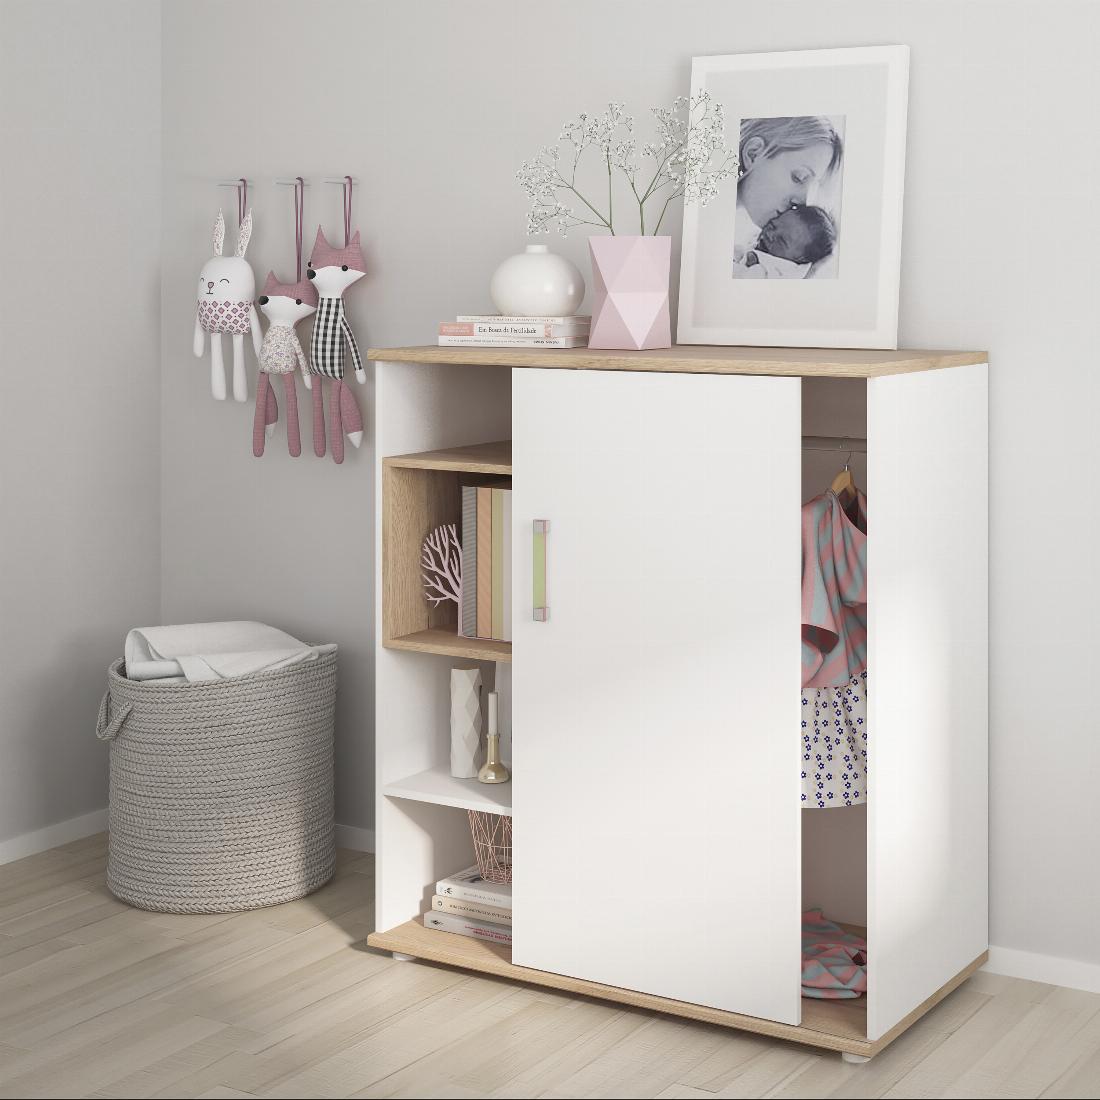 4Kids Low Cabinet with shelves (Sliding Door)